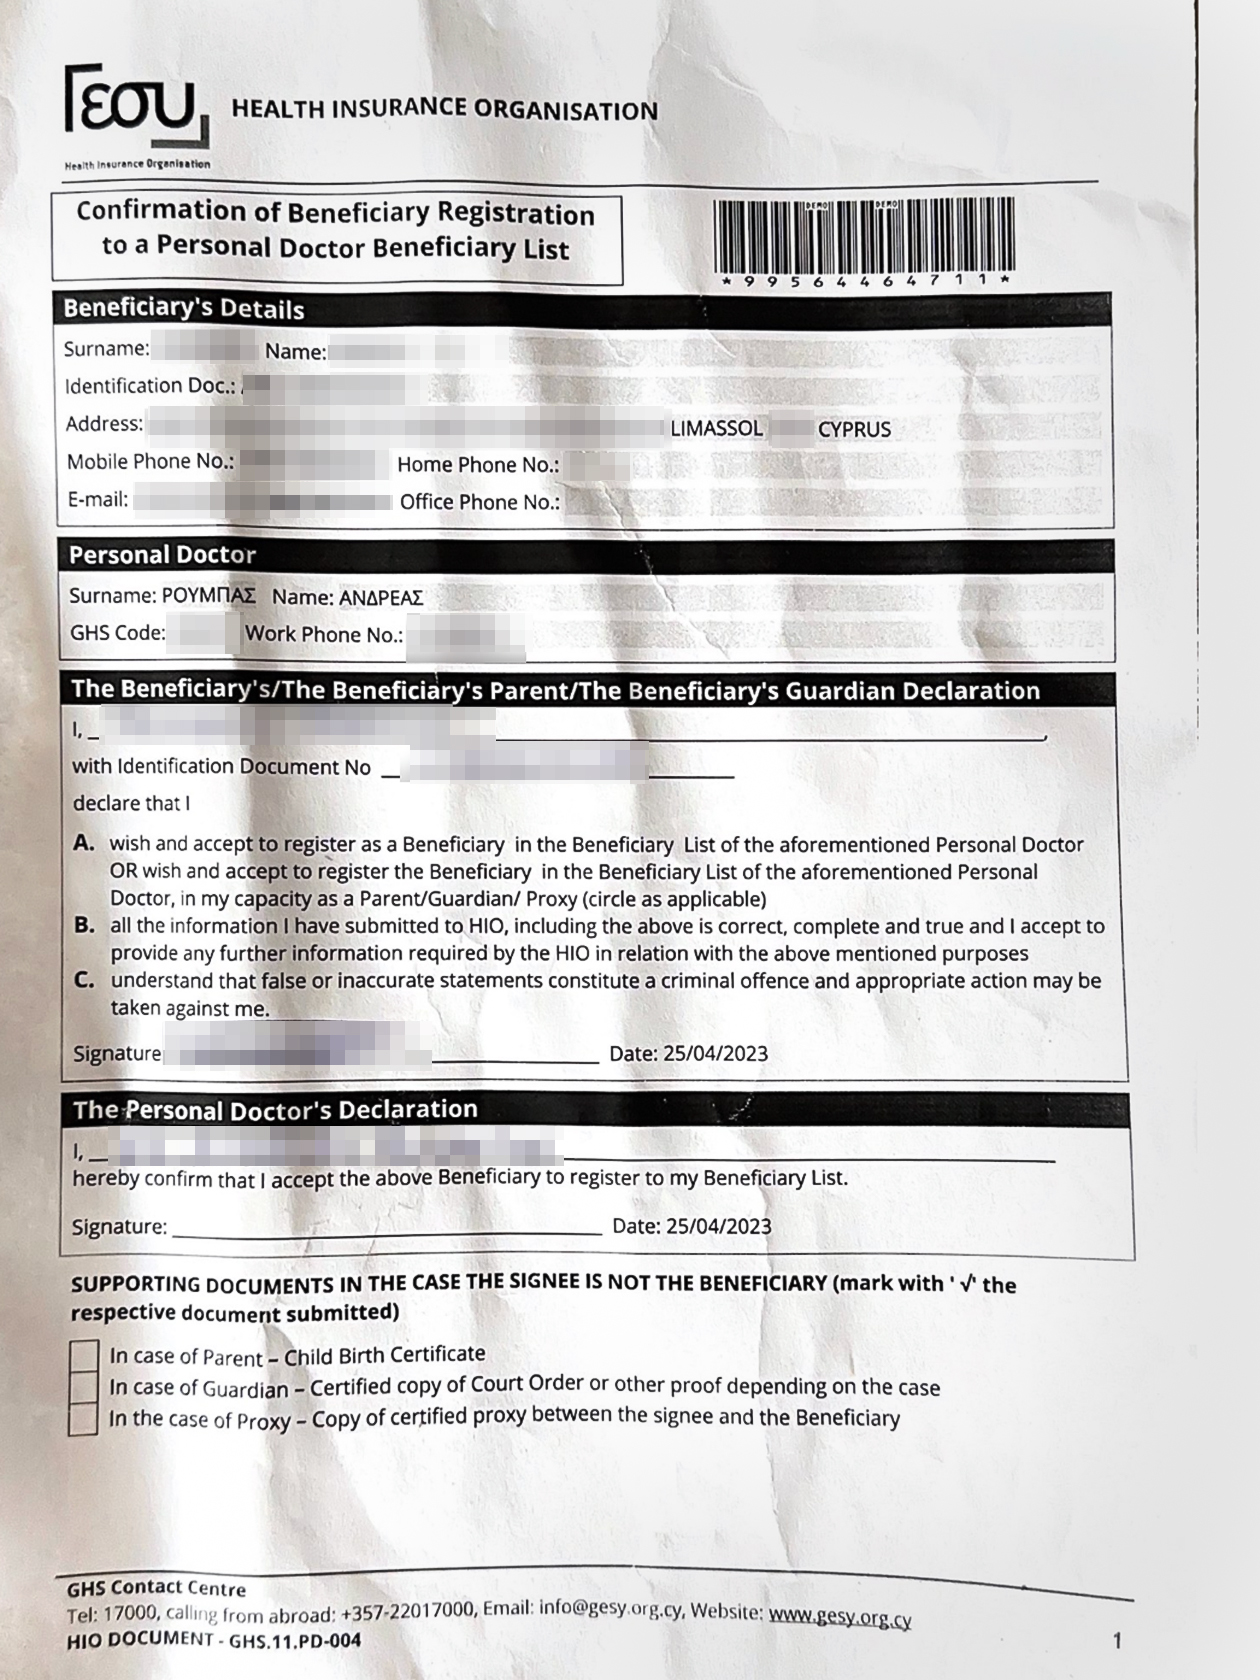 Документ мужа о регистрации в «Геси»